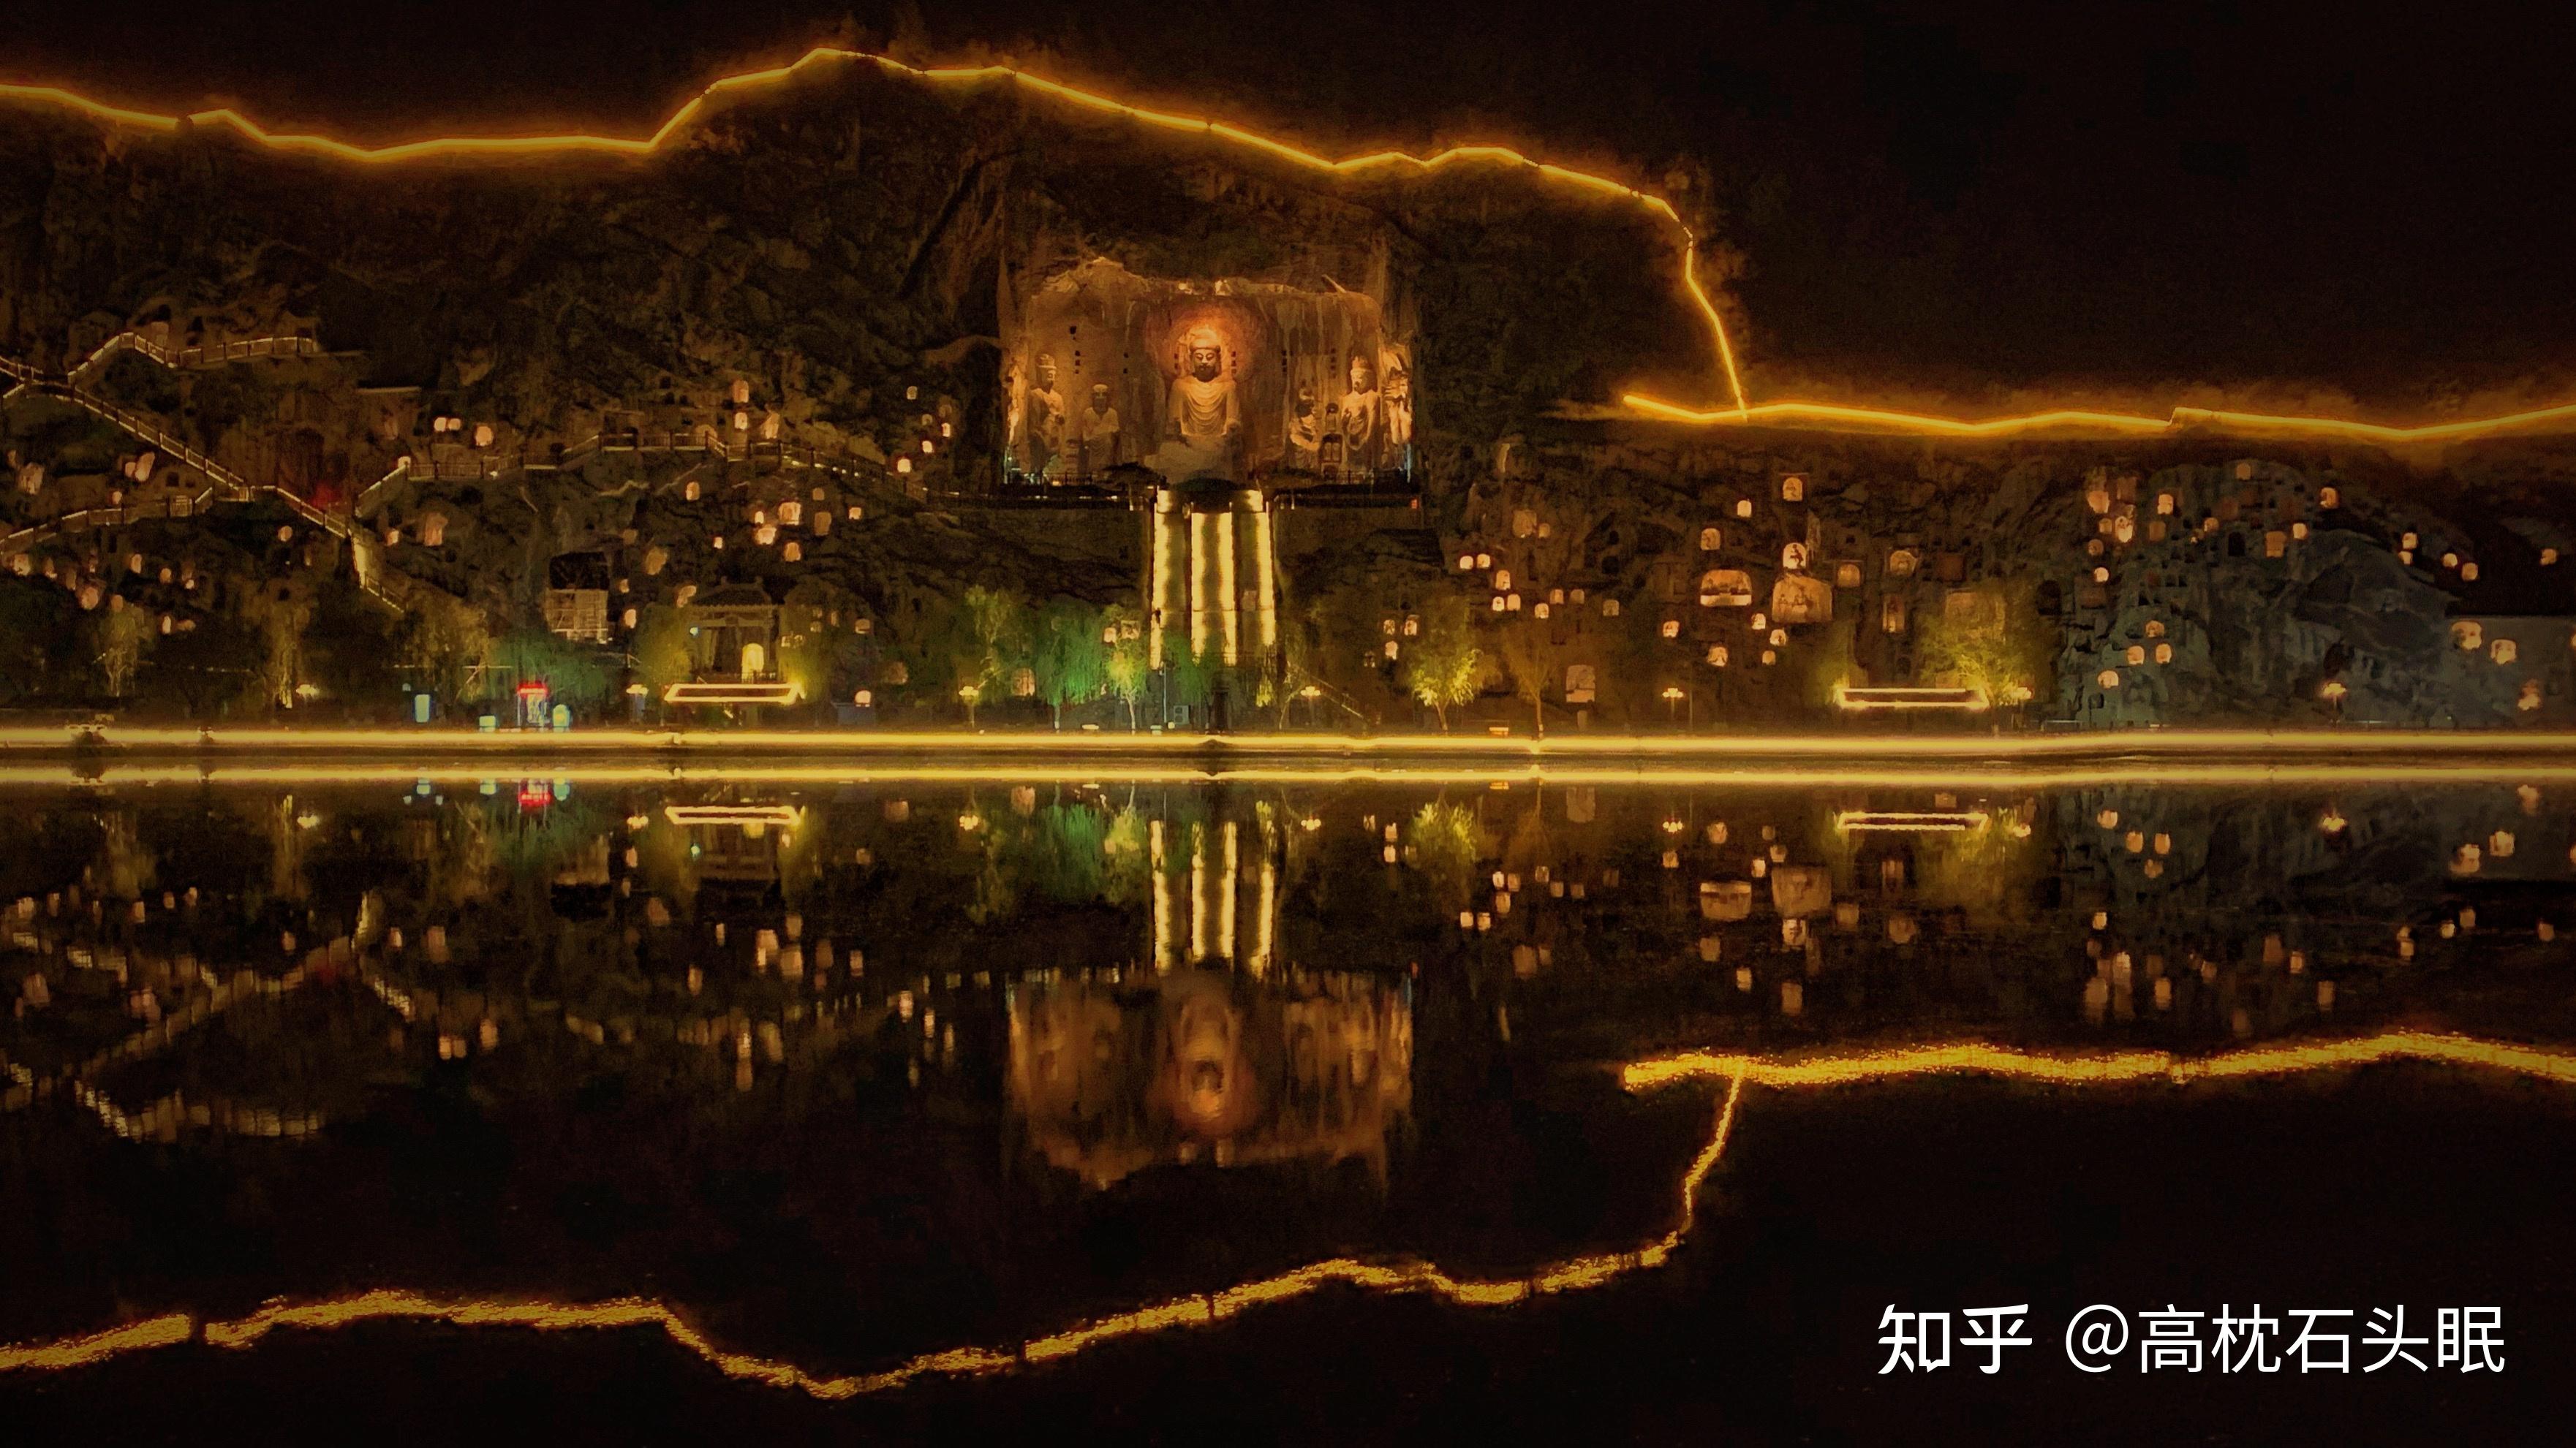 洛阳龙门石窟夜景照明设计